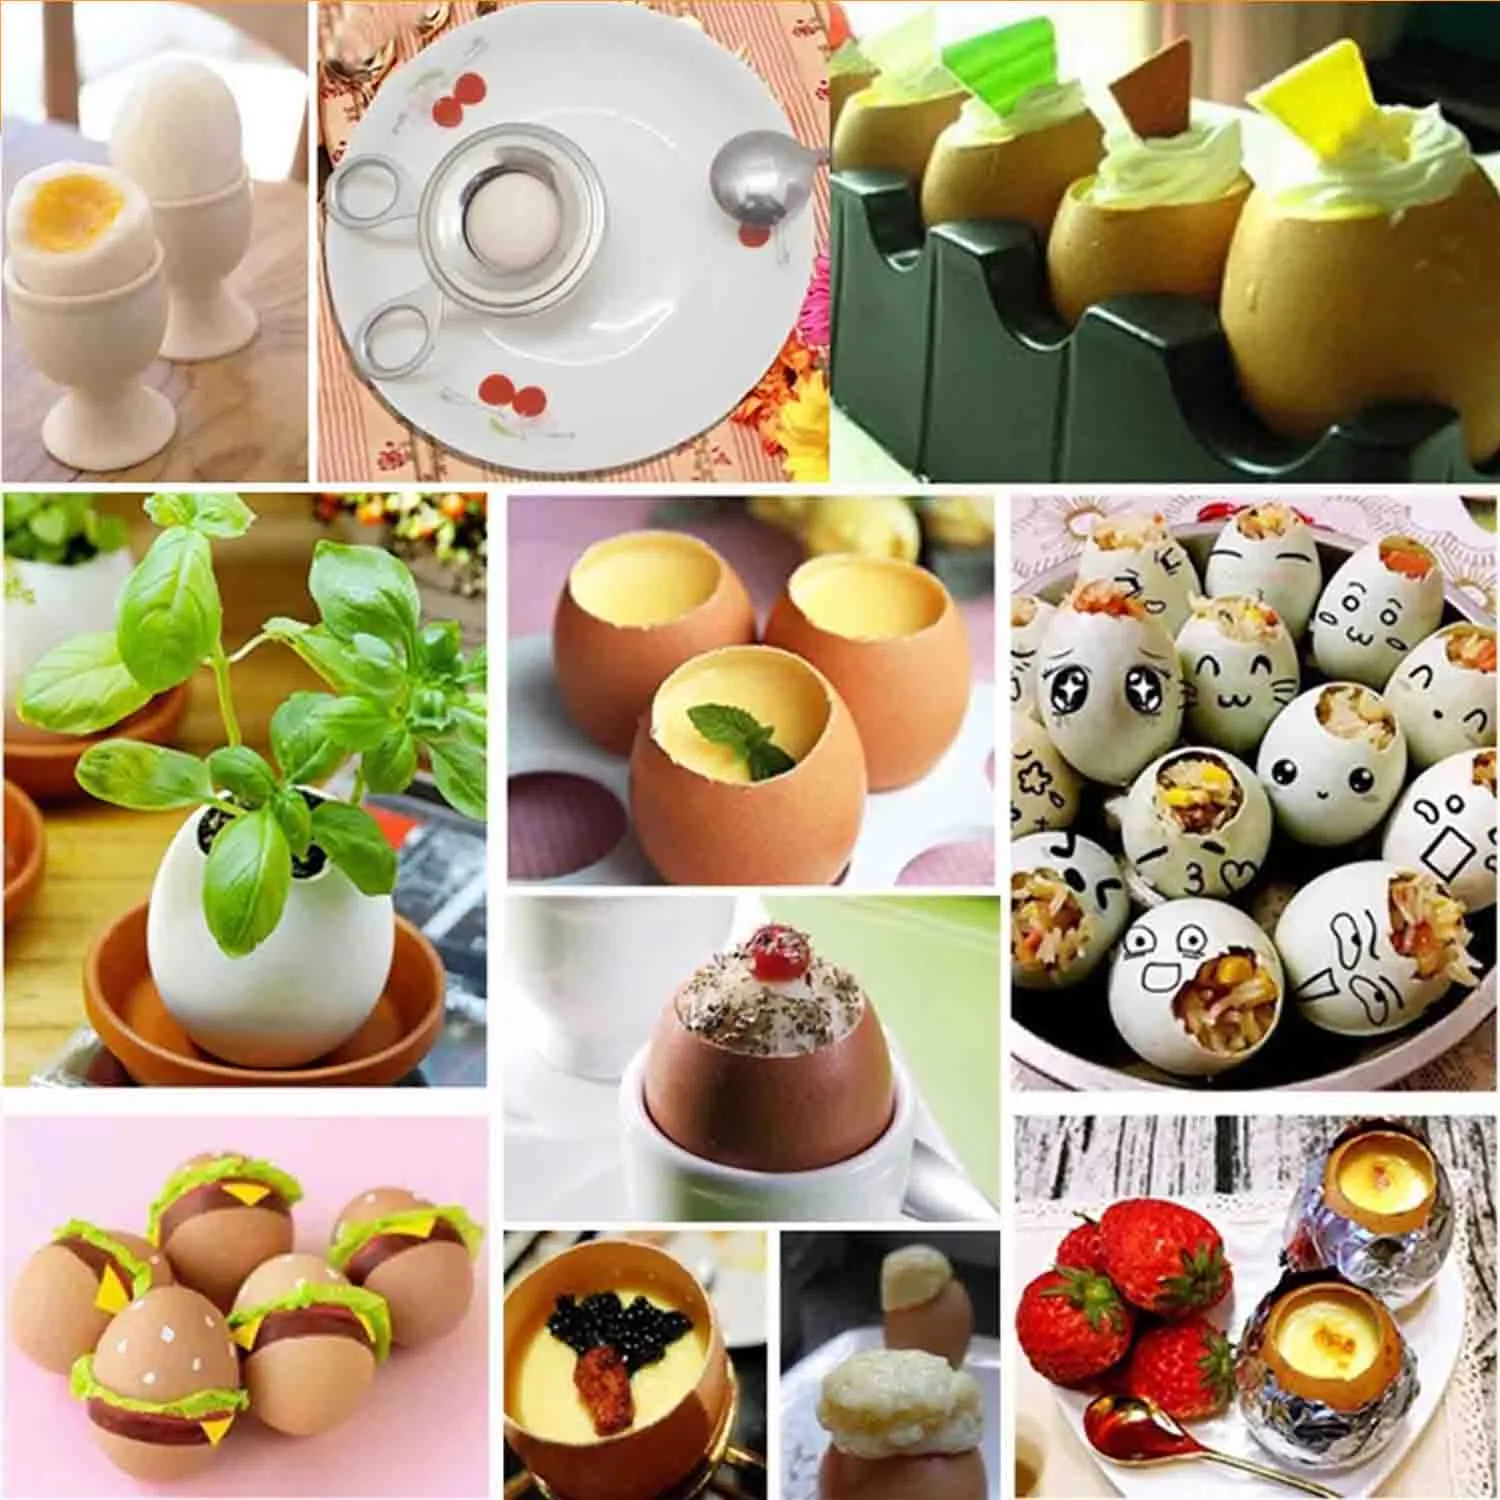 Herramienta multifuncional para batir huevos, utensilio para abrir huevos, tijeras, rebanada de acero inoxidável, separador de huevos, accesorios de cocina